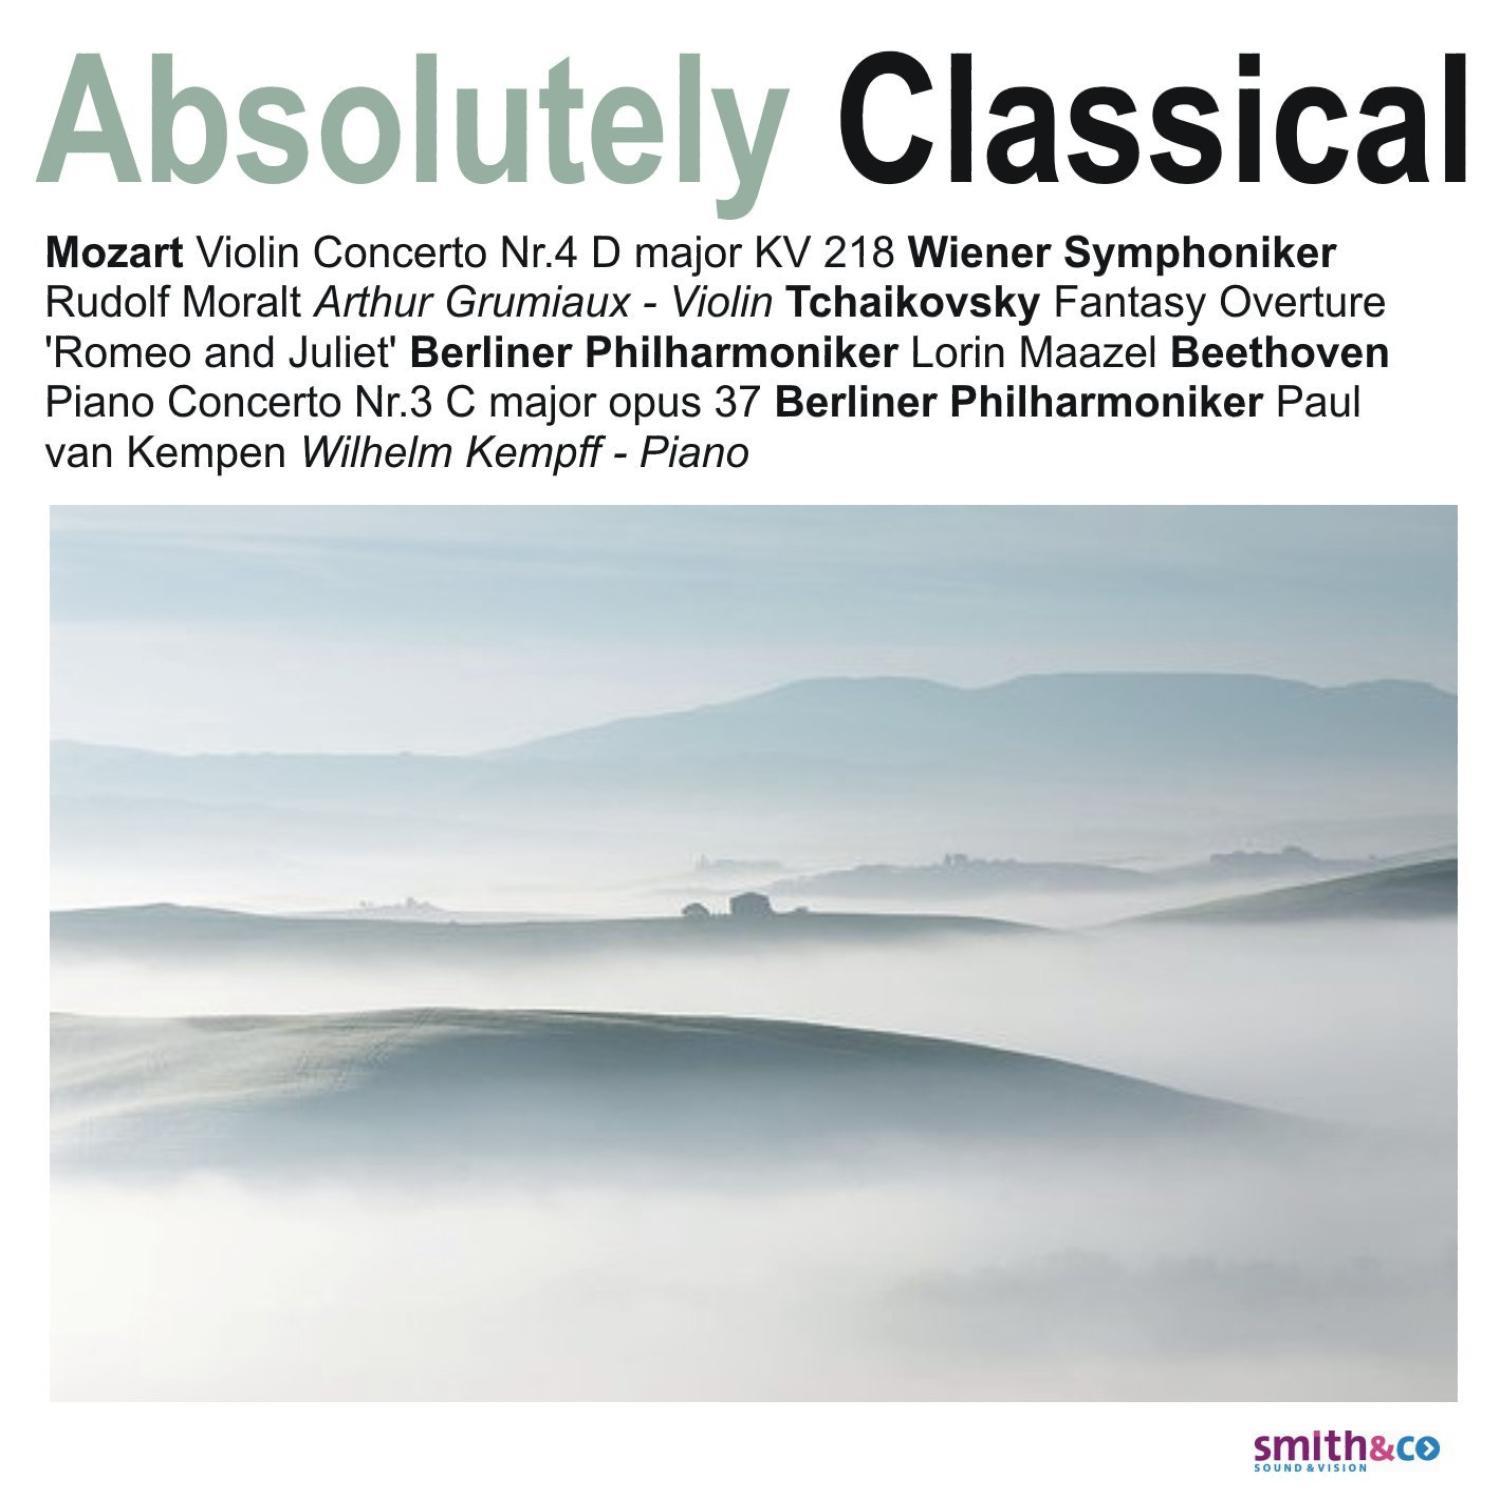 Wilhelm Kempff - Piano Concerto No. 3 in C Major, Op. 37: II. Largo